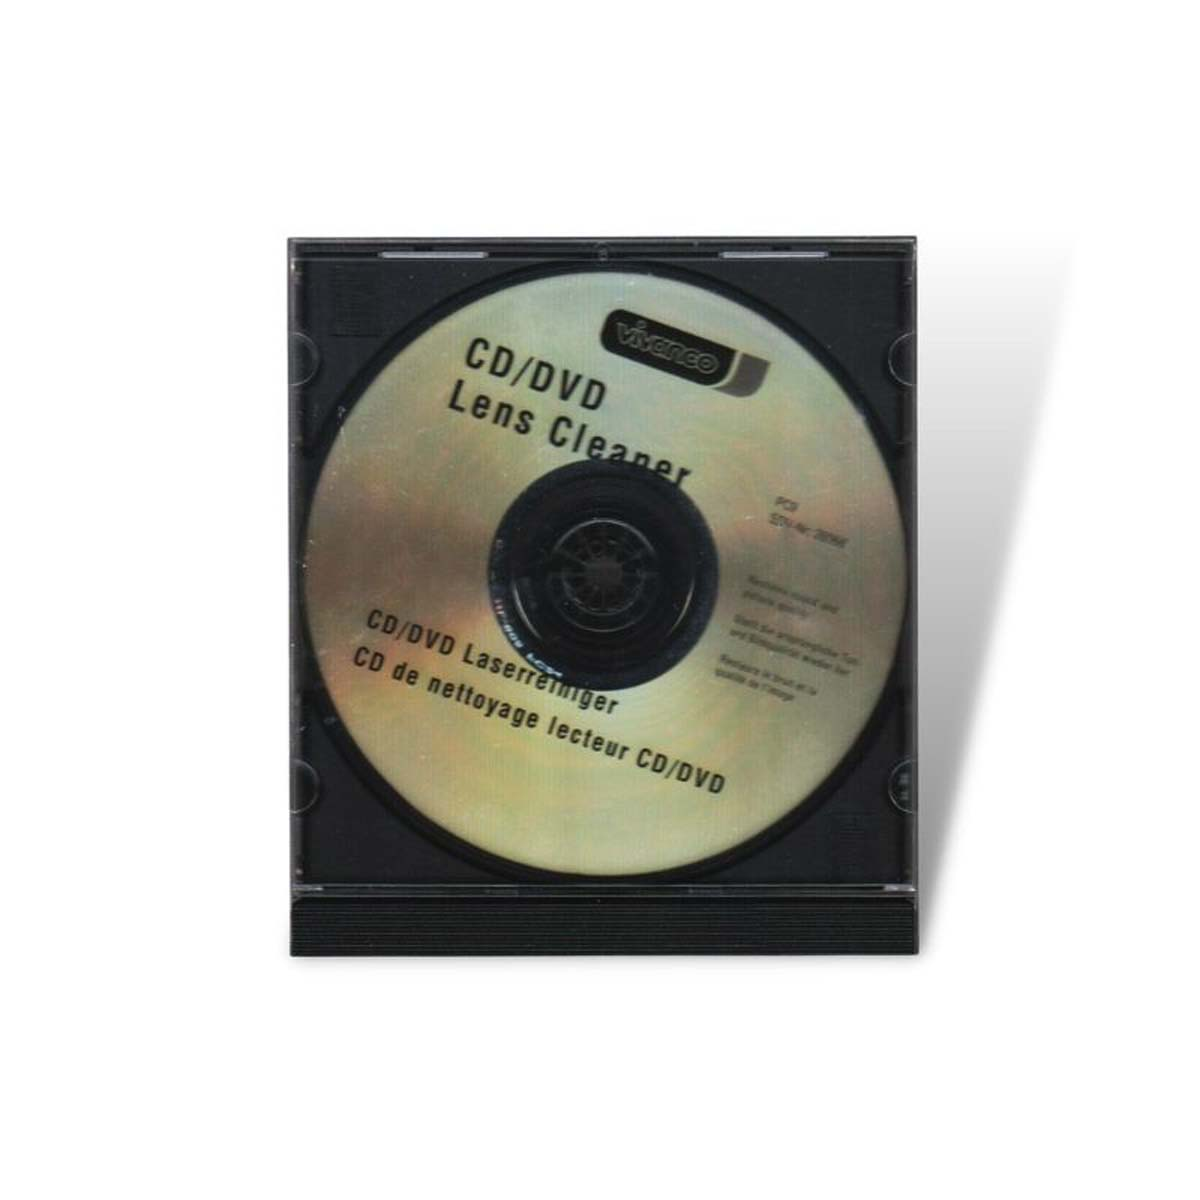 VIVANCO Transparent PC, Laserreiniger für DVD, CD, 39753